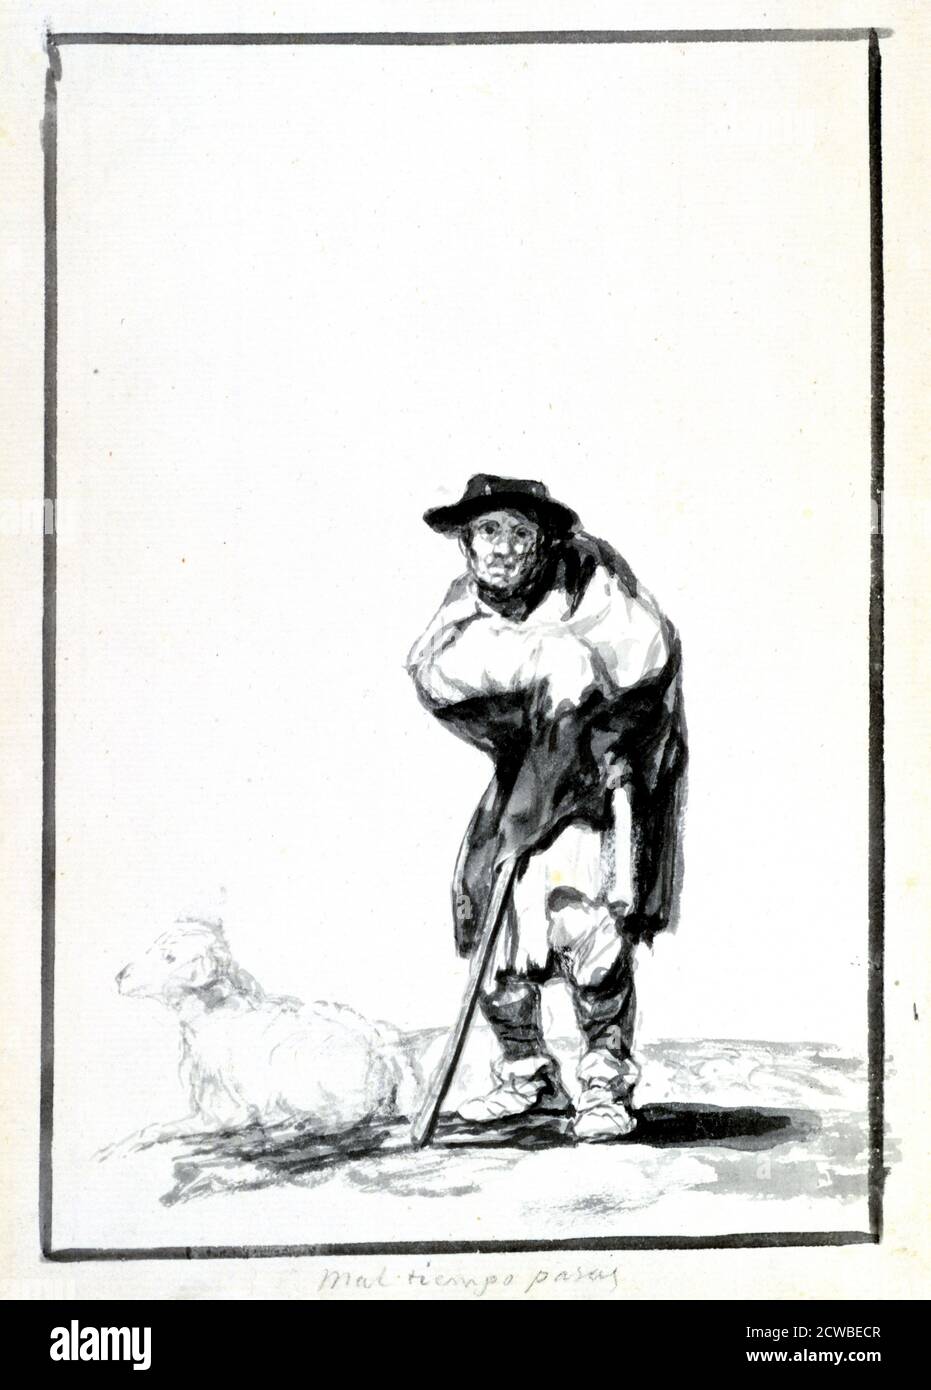 Le Berger', c1760-1820. Artiste: Francisco Goya. Francisco Goya(1746-1828) était un artiste espagnol dont les peintures, dessins et gravures reflétaient des bouleversements historiques contemporains et influençaient d'importants peintres des XIXe et XXe siècles. Banque D'Images